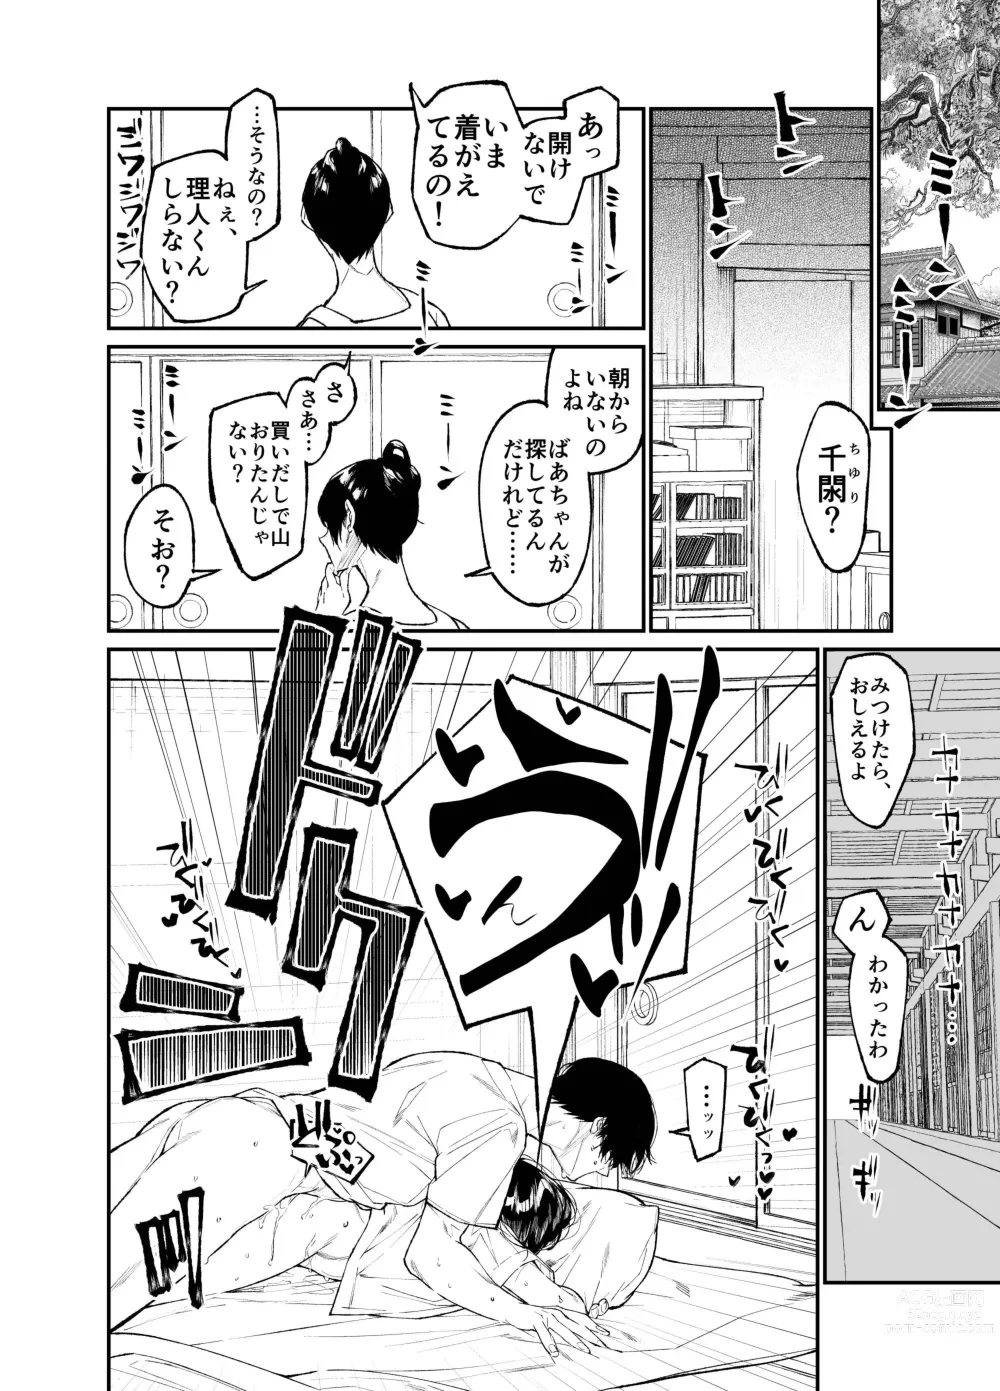 Page 46 of doujinshi Natsu, Shoujo wa Tonde, Hi ni Iru.